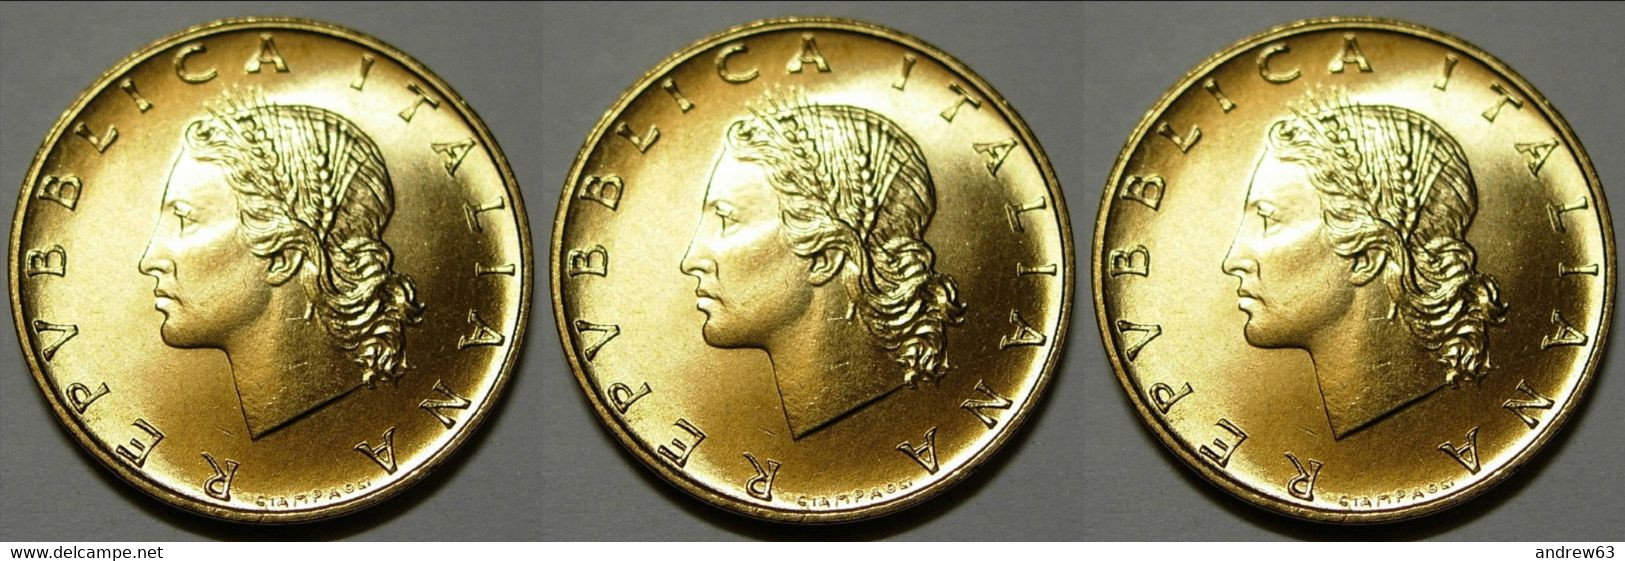 ITALIA - Lire 20 1977 - FDC/Unc Da Rotolino/from Roll 3 Monete/3 Coins - 20 Liras